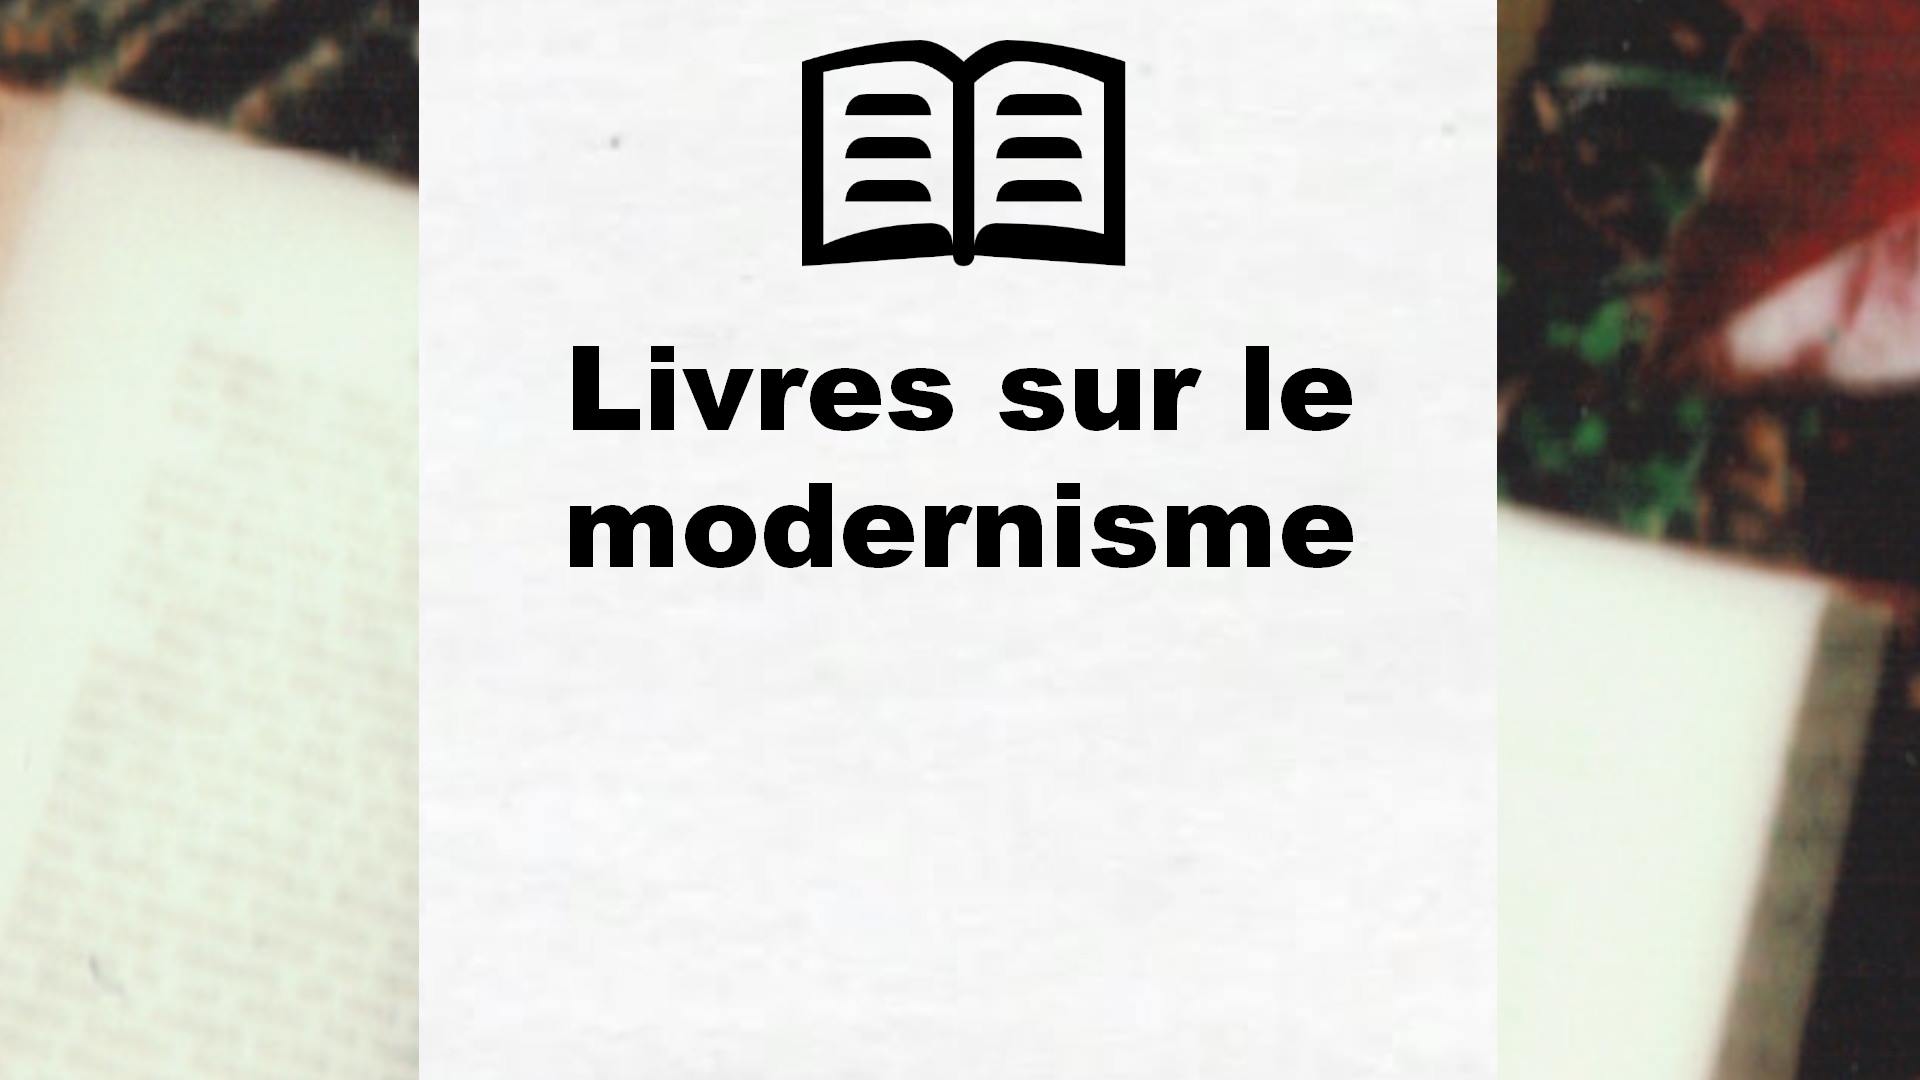 Livres sur le modernisme